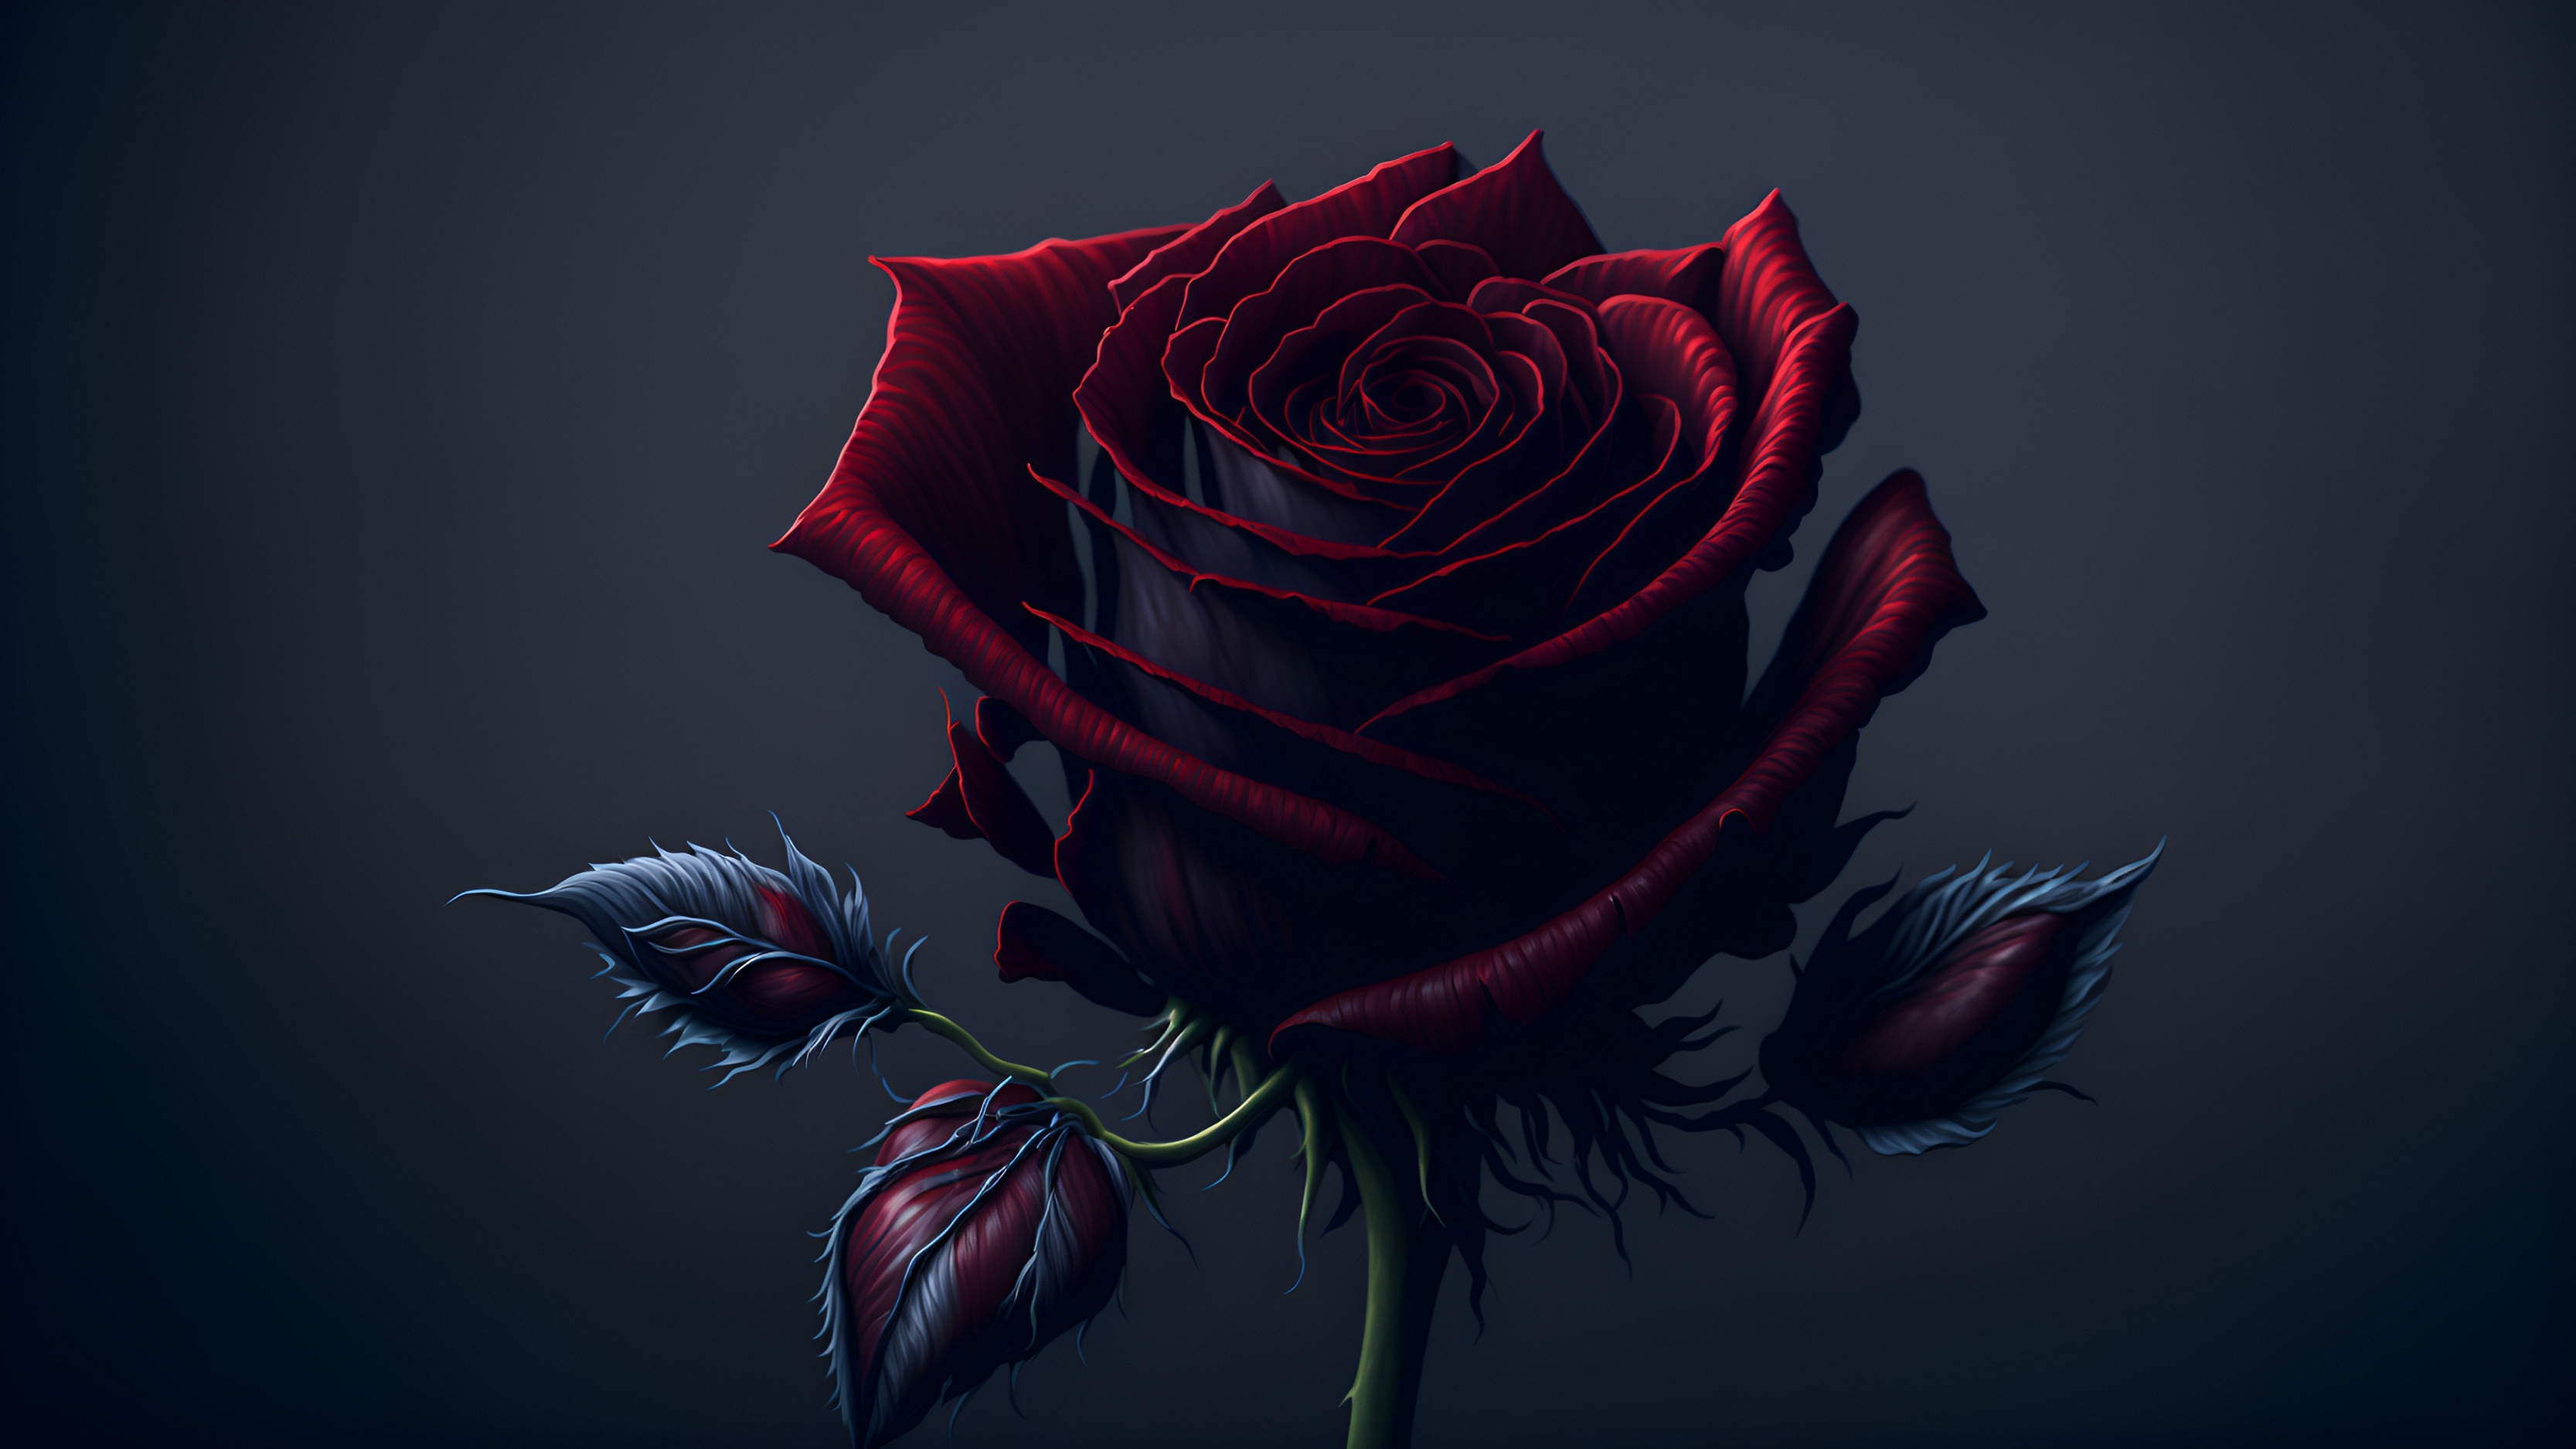 Бесплатное фото Черная роза с красным свечение